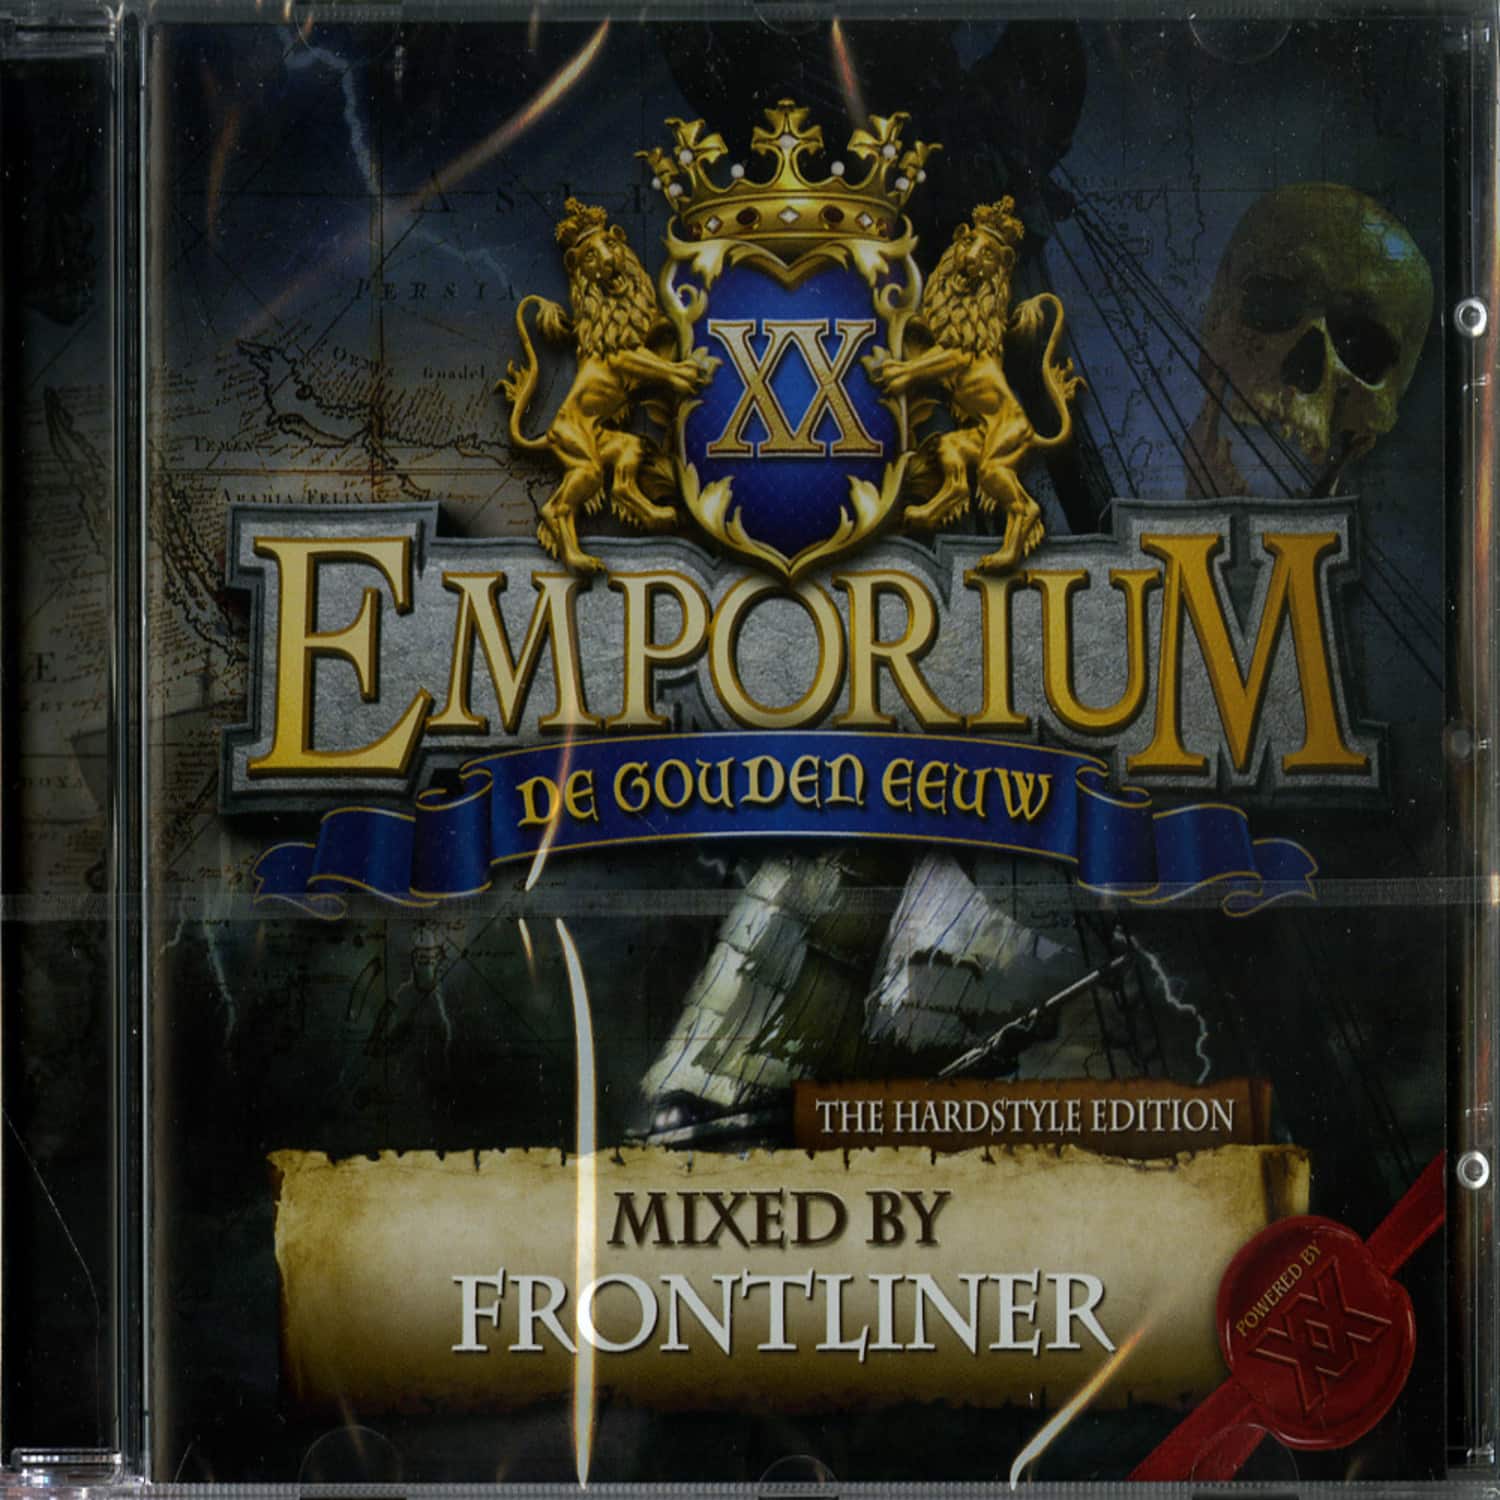 Frontliner - EMPORIUM 2012 - DE GOUDEN EEUW 